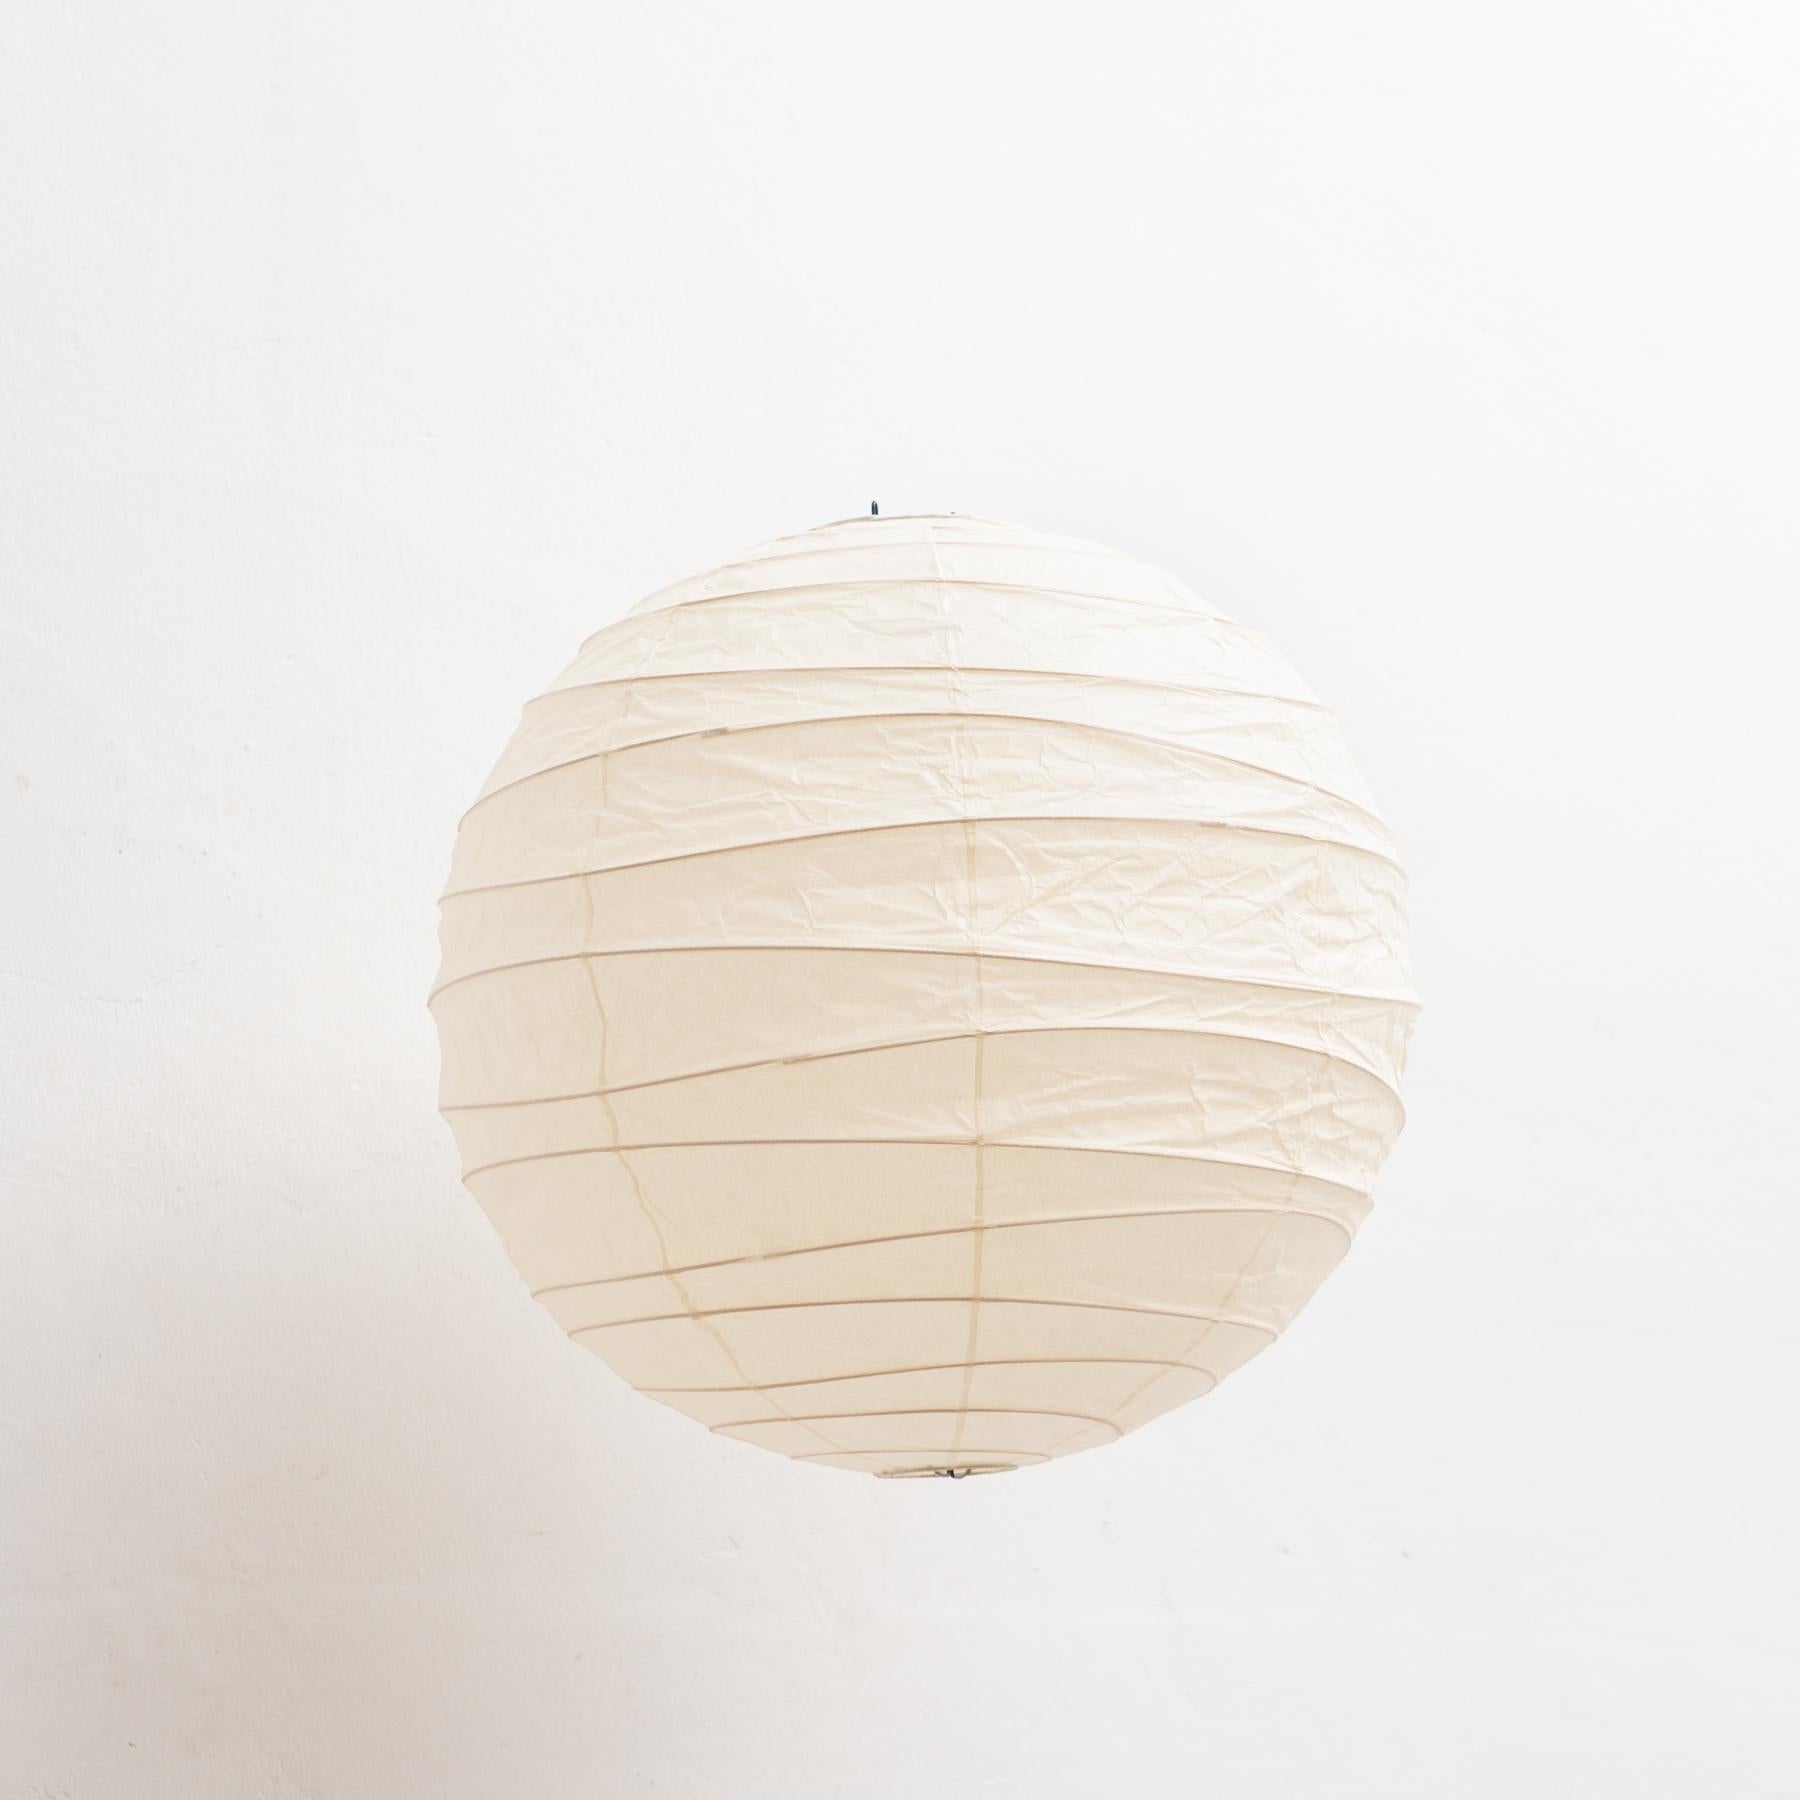 Le plafonnier Isamu Noguchi 45D est un chef-d'œuvre d'éclairage qui allie élégance minimaliste et fonctionnalité moderne. Conçu par le célèbre artiste et designer Isamu Noguchi en 1951, ce plafonnier est un exemple de sa capacité à créer des pièces